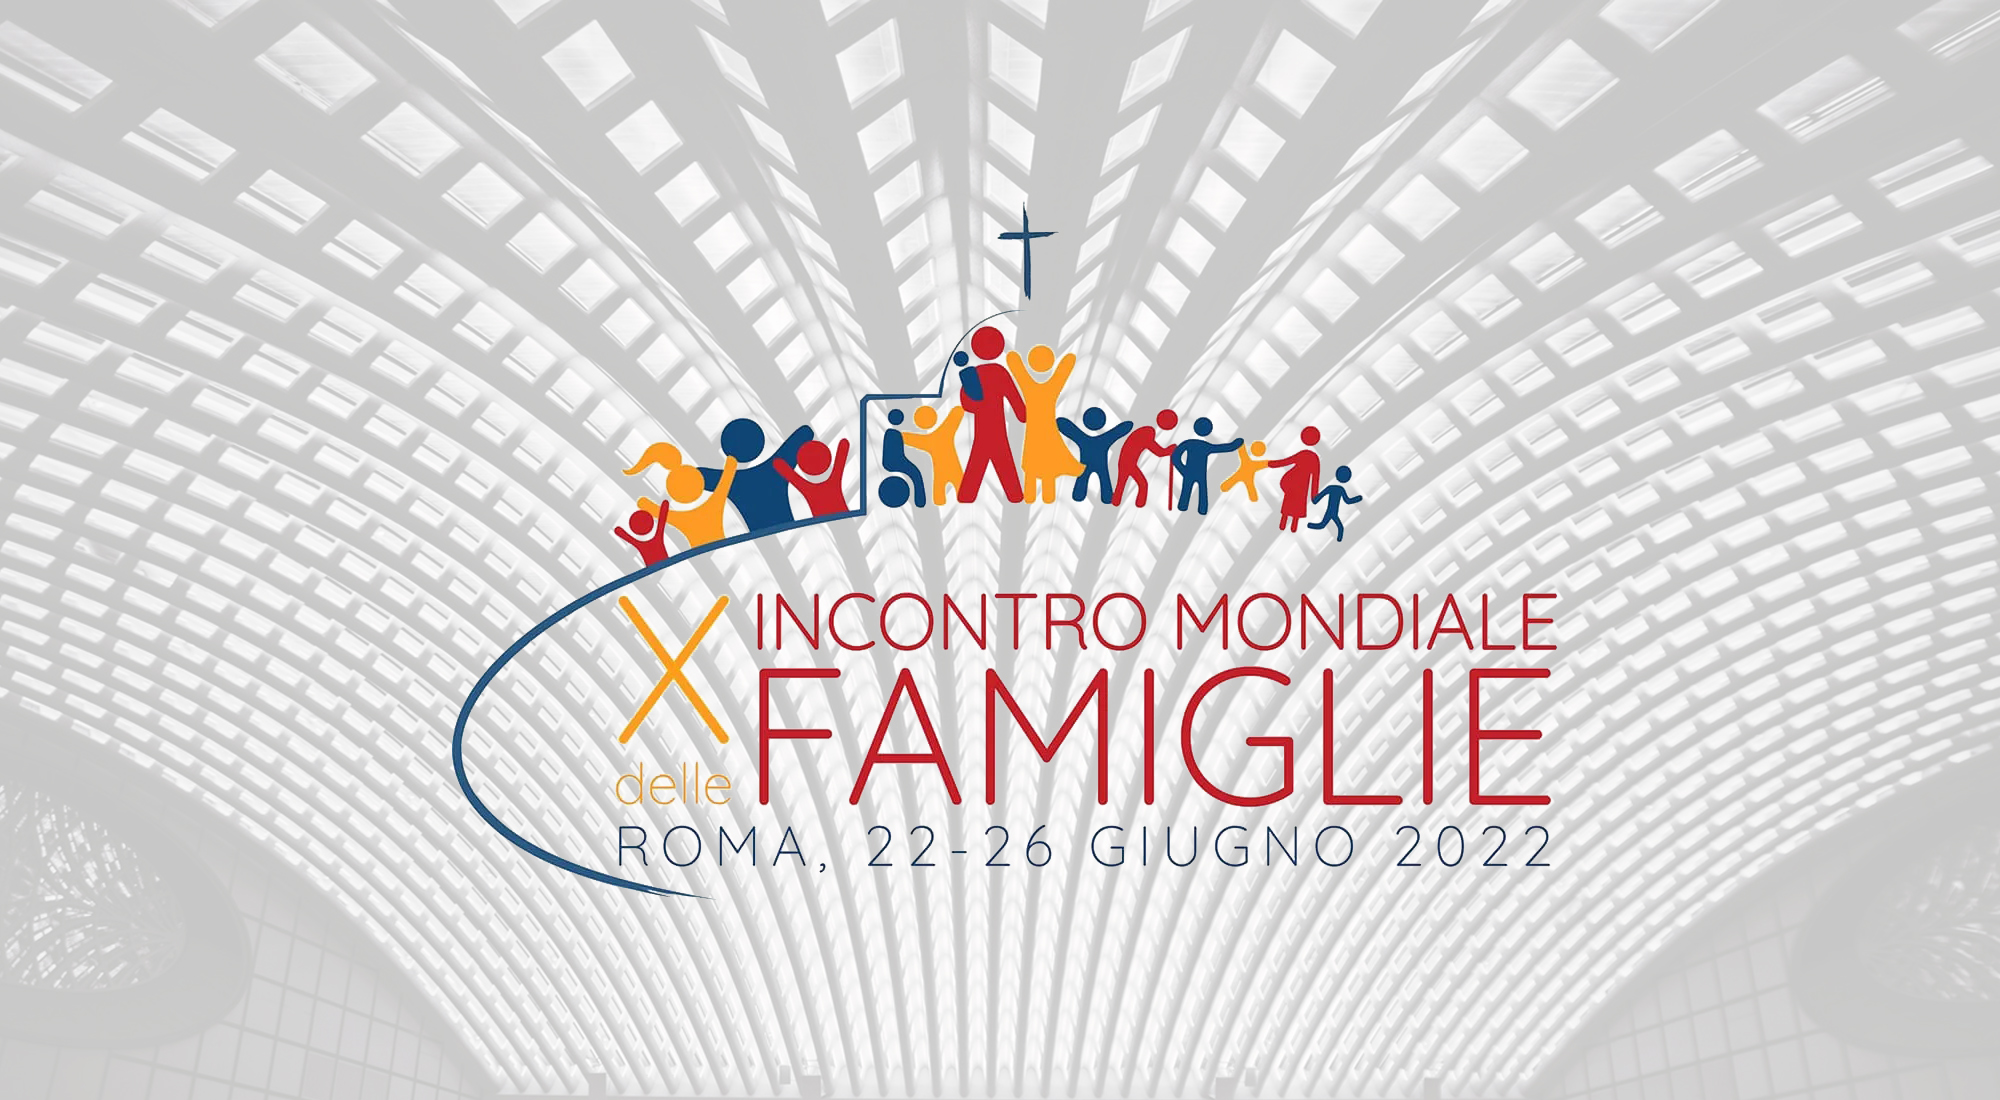 THE BEAUTY OF FAMILY - Evento di apertura del Festival delle famiglie